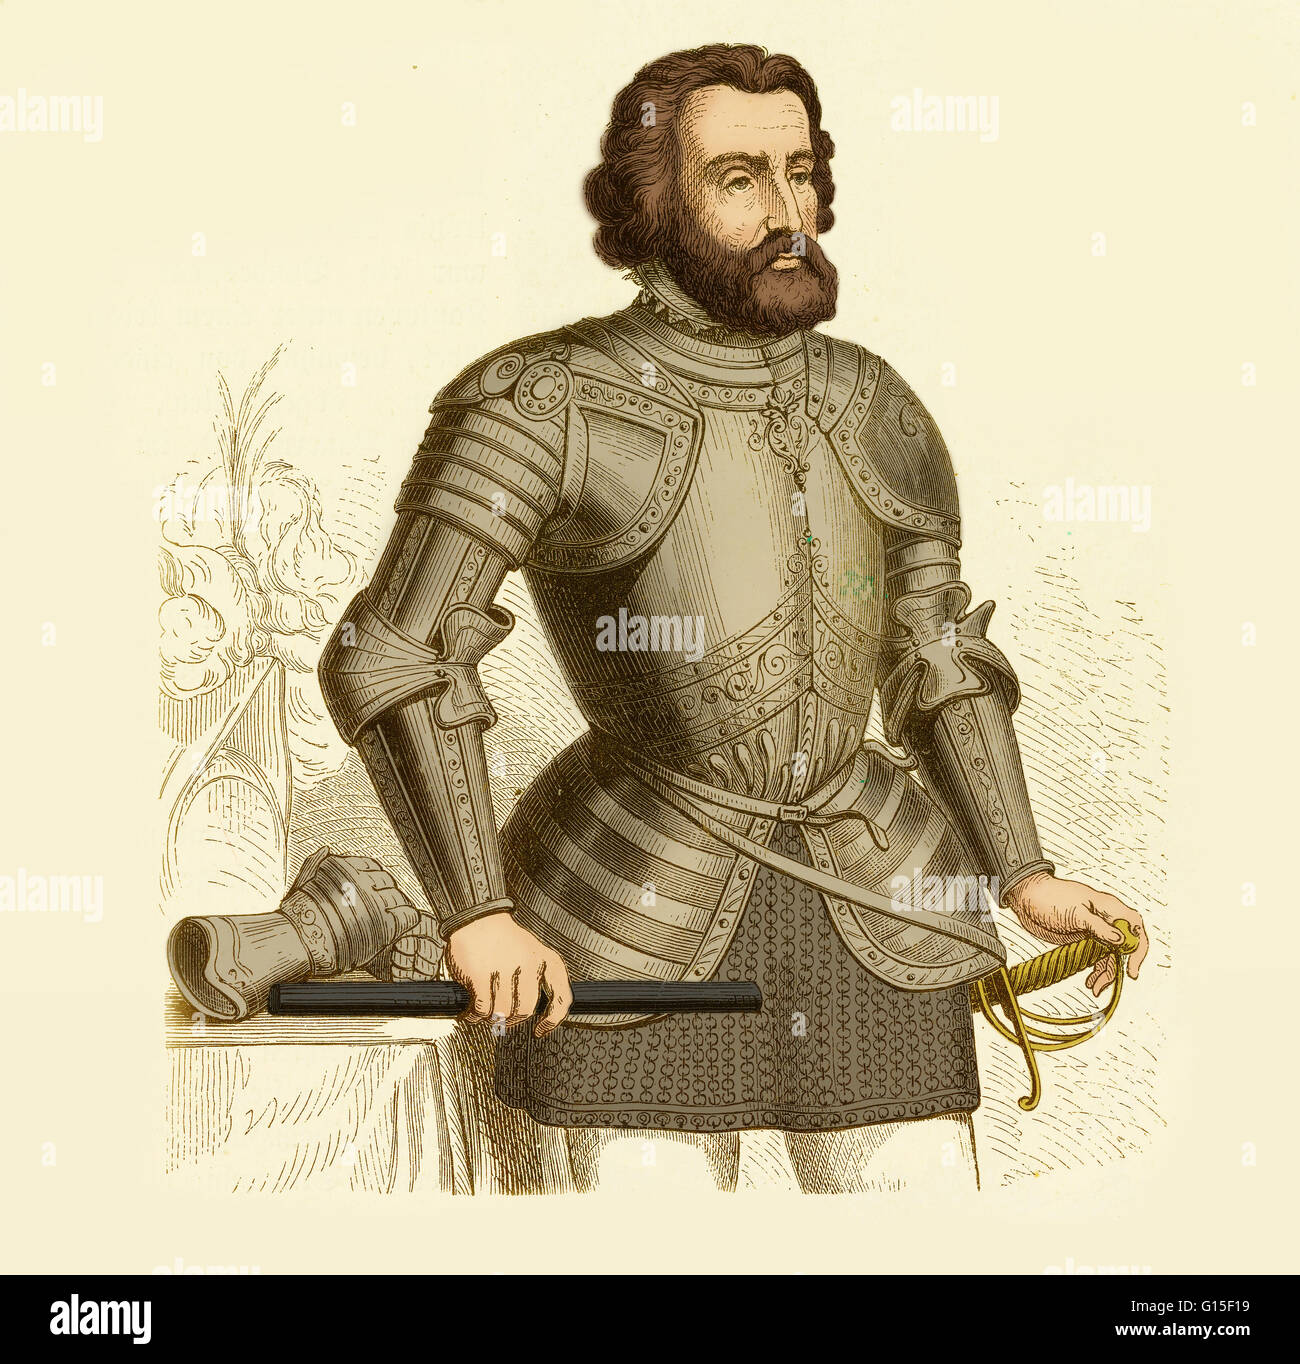 Hernán Cortés de Monroy y Pizarro (1485 - 2 de diciembre de 1547) fue un  conquistador español que forma parte de la generación de los colonizadores  españoles que comenzó la primera fase